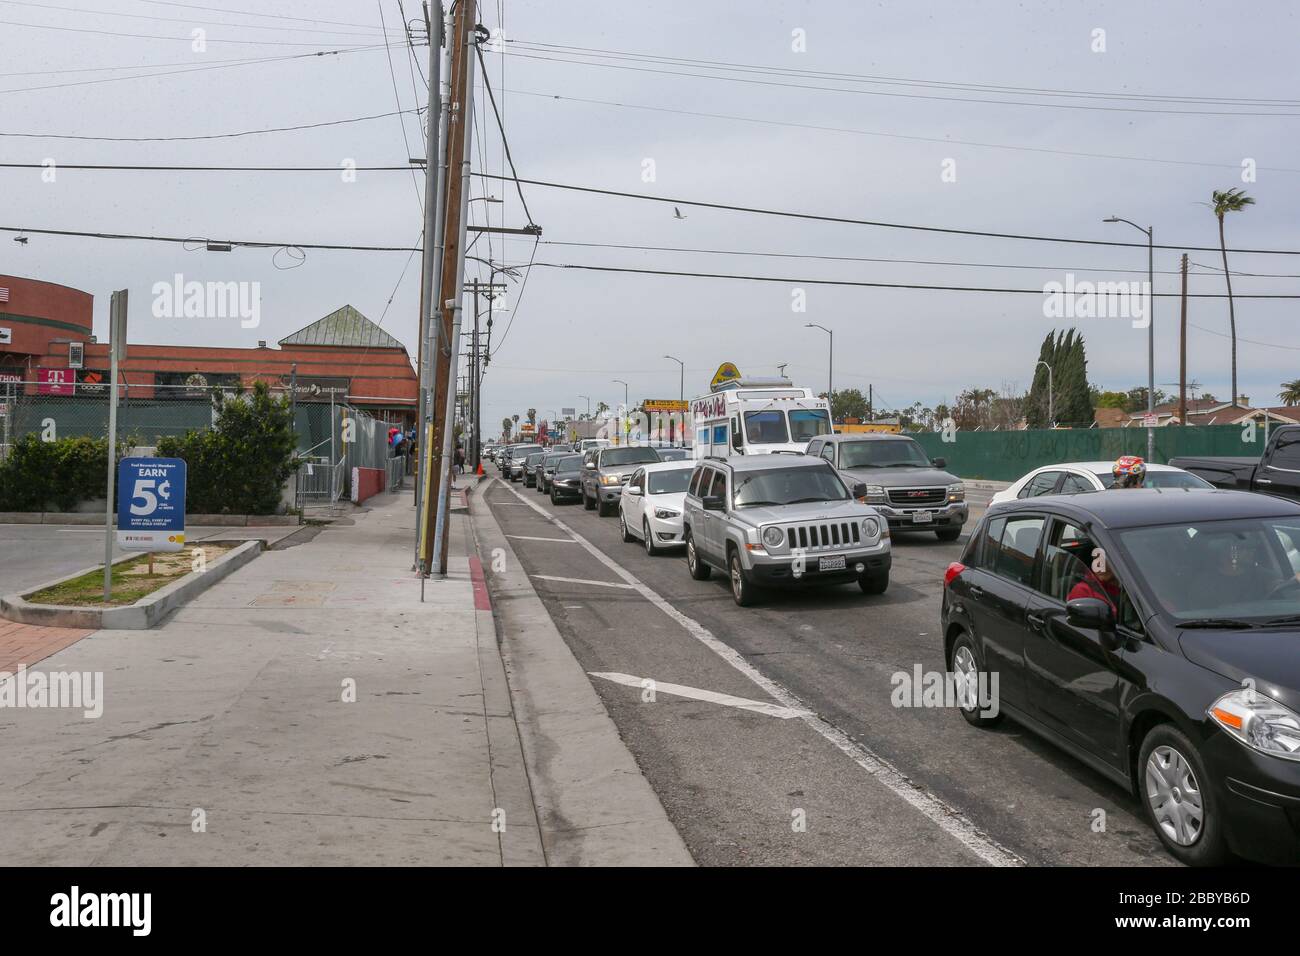 Vista generale del negozio Nipsey Hussle The Marathon, situato a 3420 W Slauson Ave F, sulla scia della pandemia di coronavirus COVID-19, martedì 31 marzo 2020 a Los Angeles, California, Stati Uniti. (Foto di IOS/Espa-Images) Foto Stock